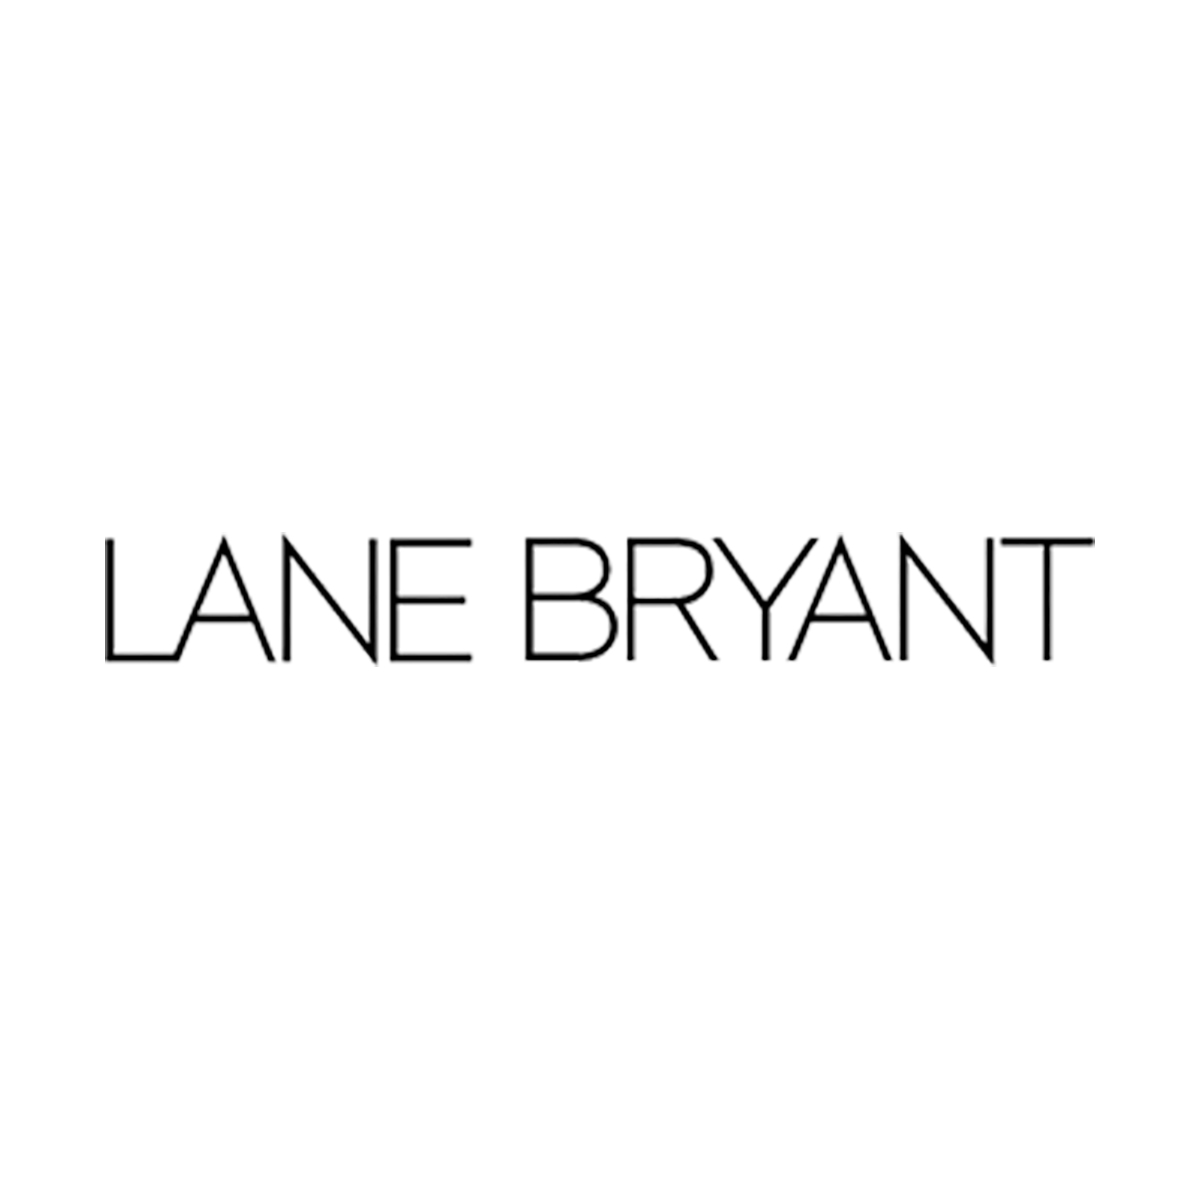 B-Lane Bryant.jpg